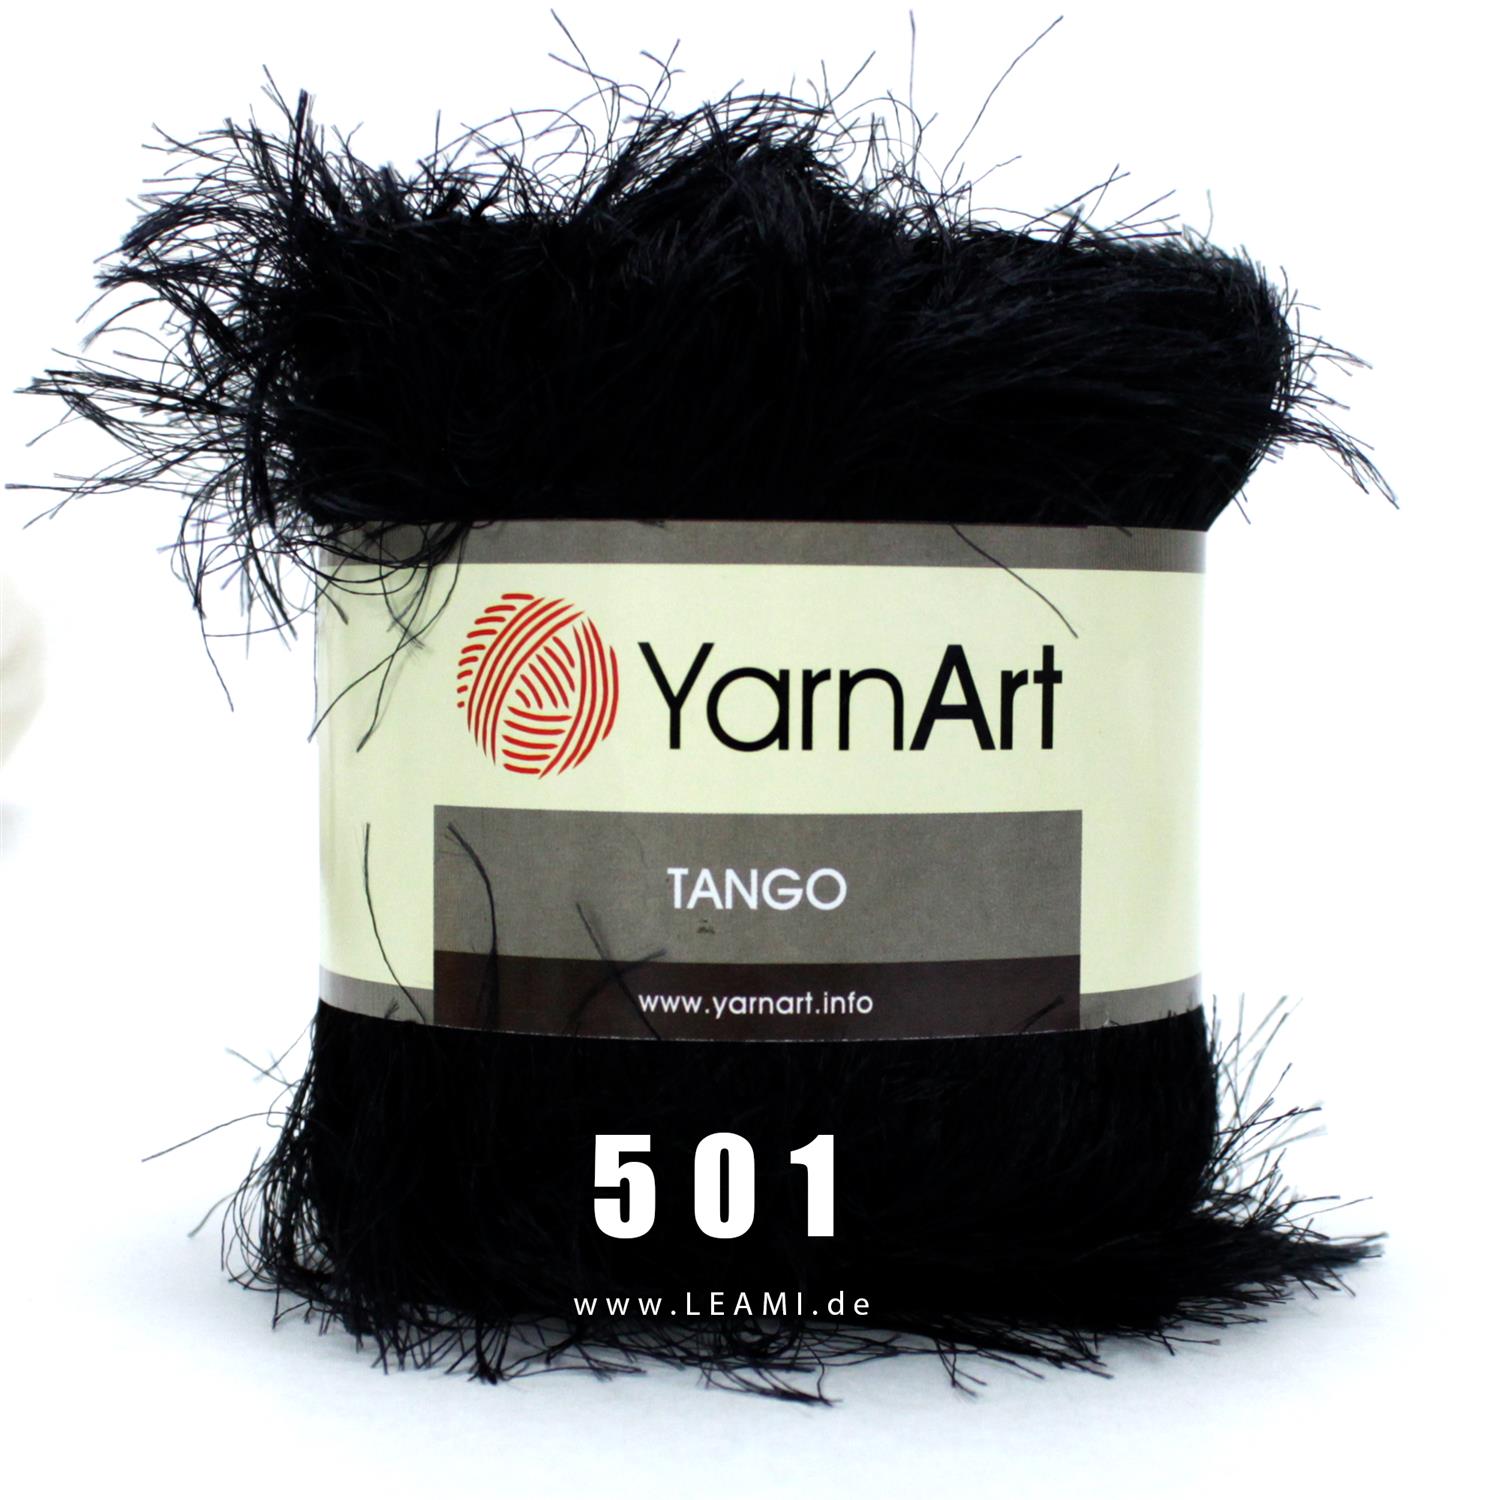 YarnArt Tango (100g/80m) 507 rauchgrau